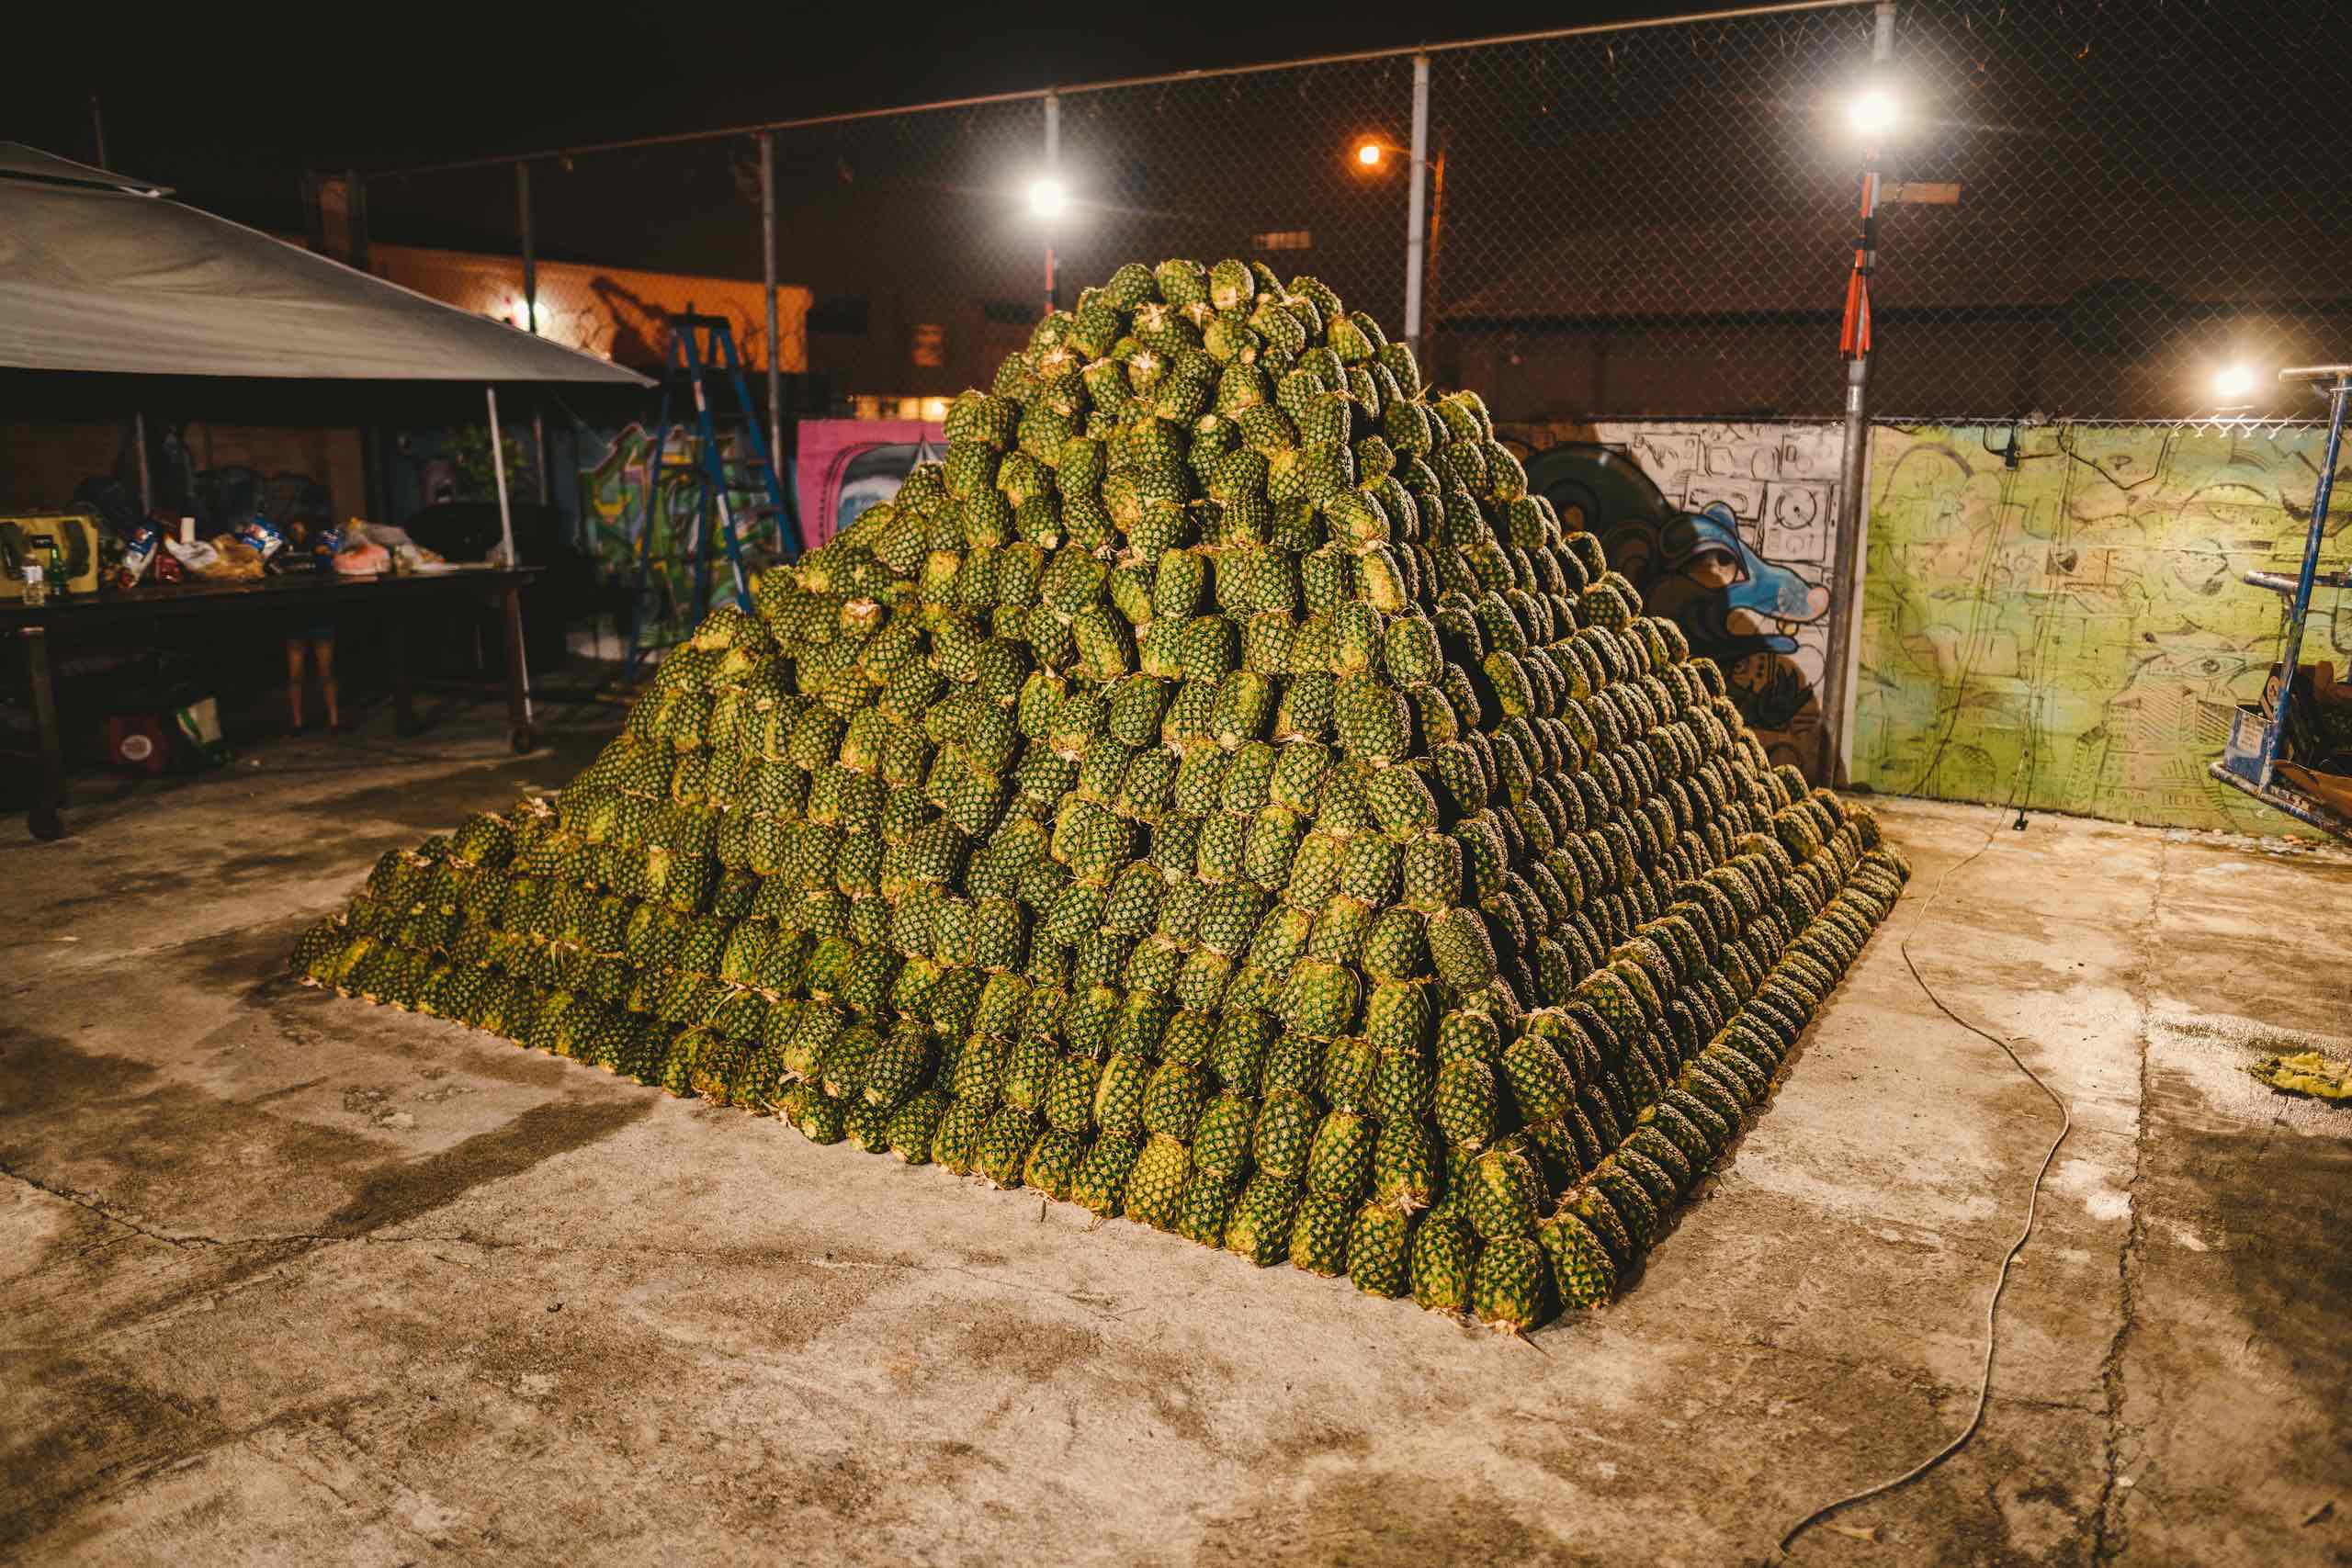 Artwalk 2018 May Pineapple Pyramid on display at night